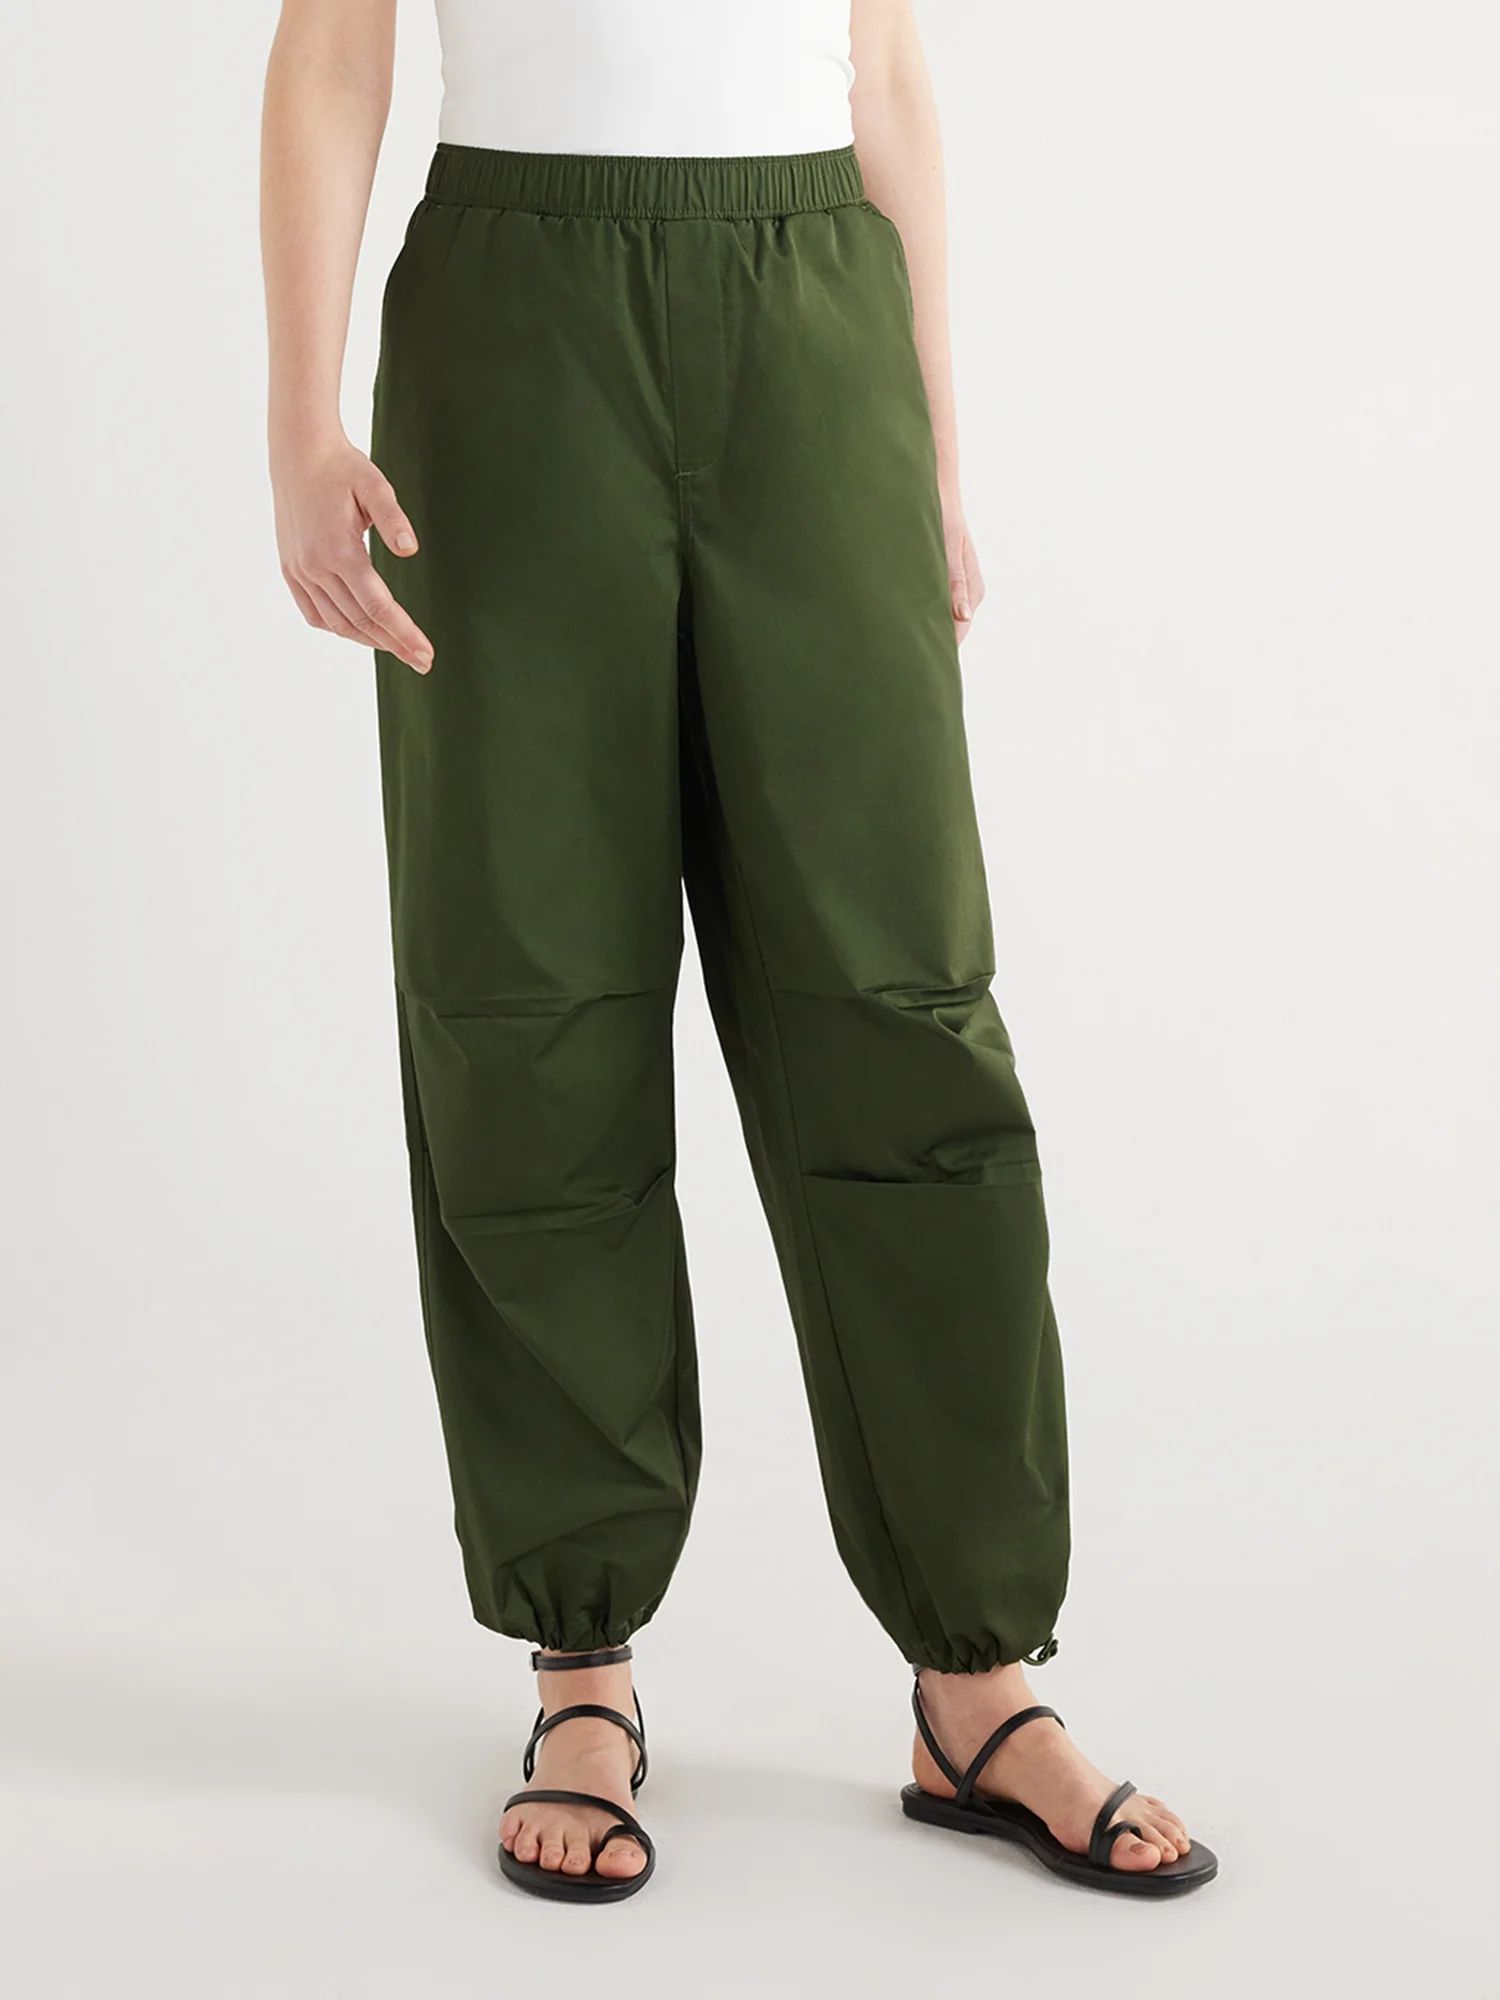 Scoop Women’s Cotton Parachute Jogger Pants, Sizes XS-XXL | Walmart (US)